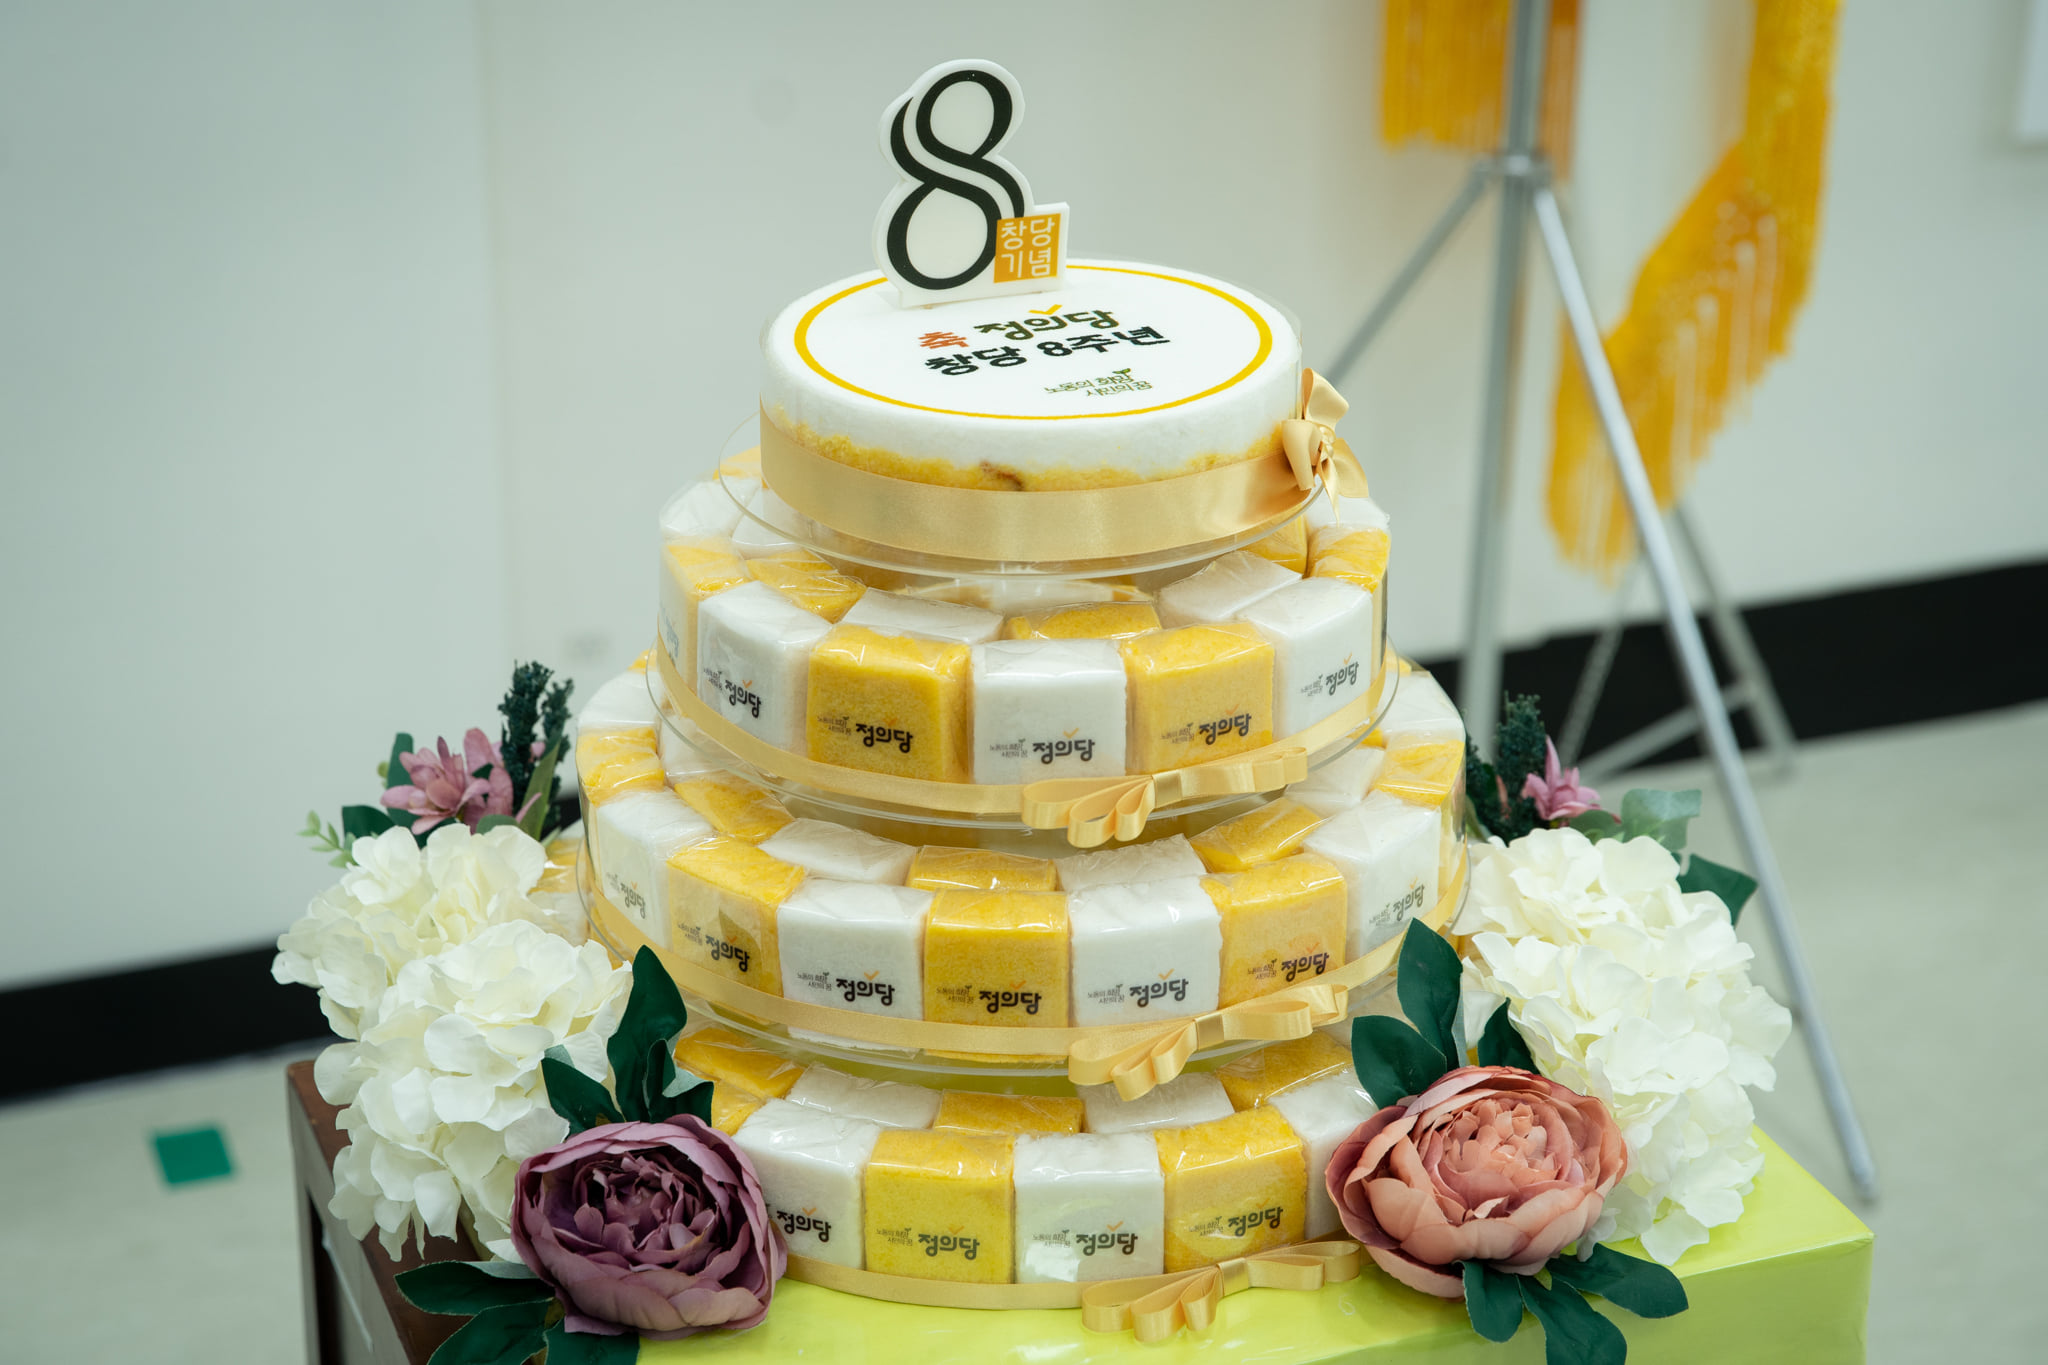 정의당 창당 8주년 기념행사에 비치된 떡케이크 사진. 노란색과 흰색 백설기에 모두 정의당 로고가 박혀있는 4층짜리 케이크